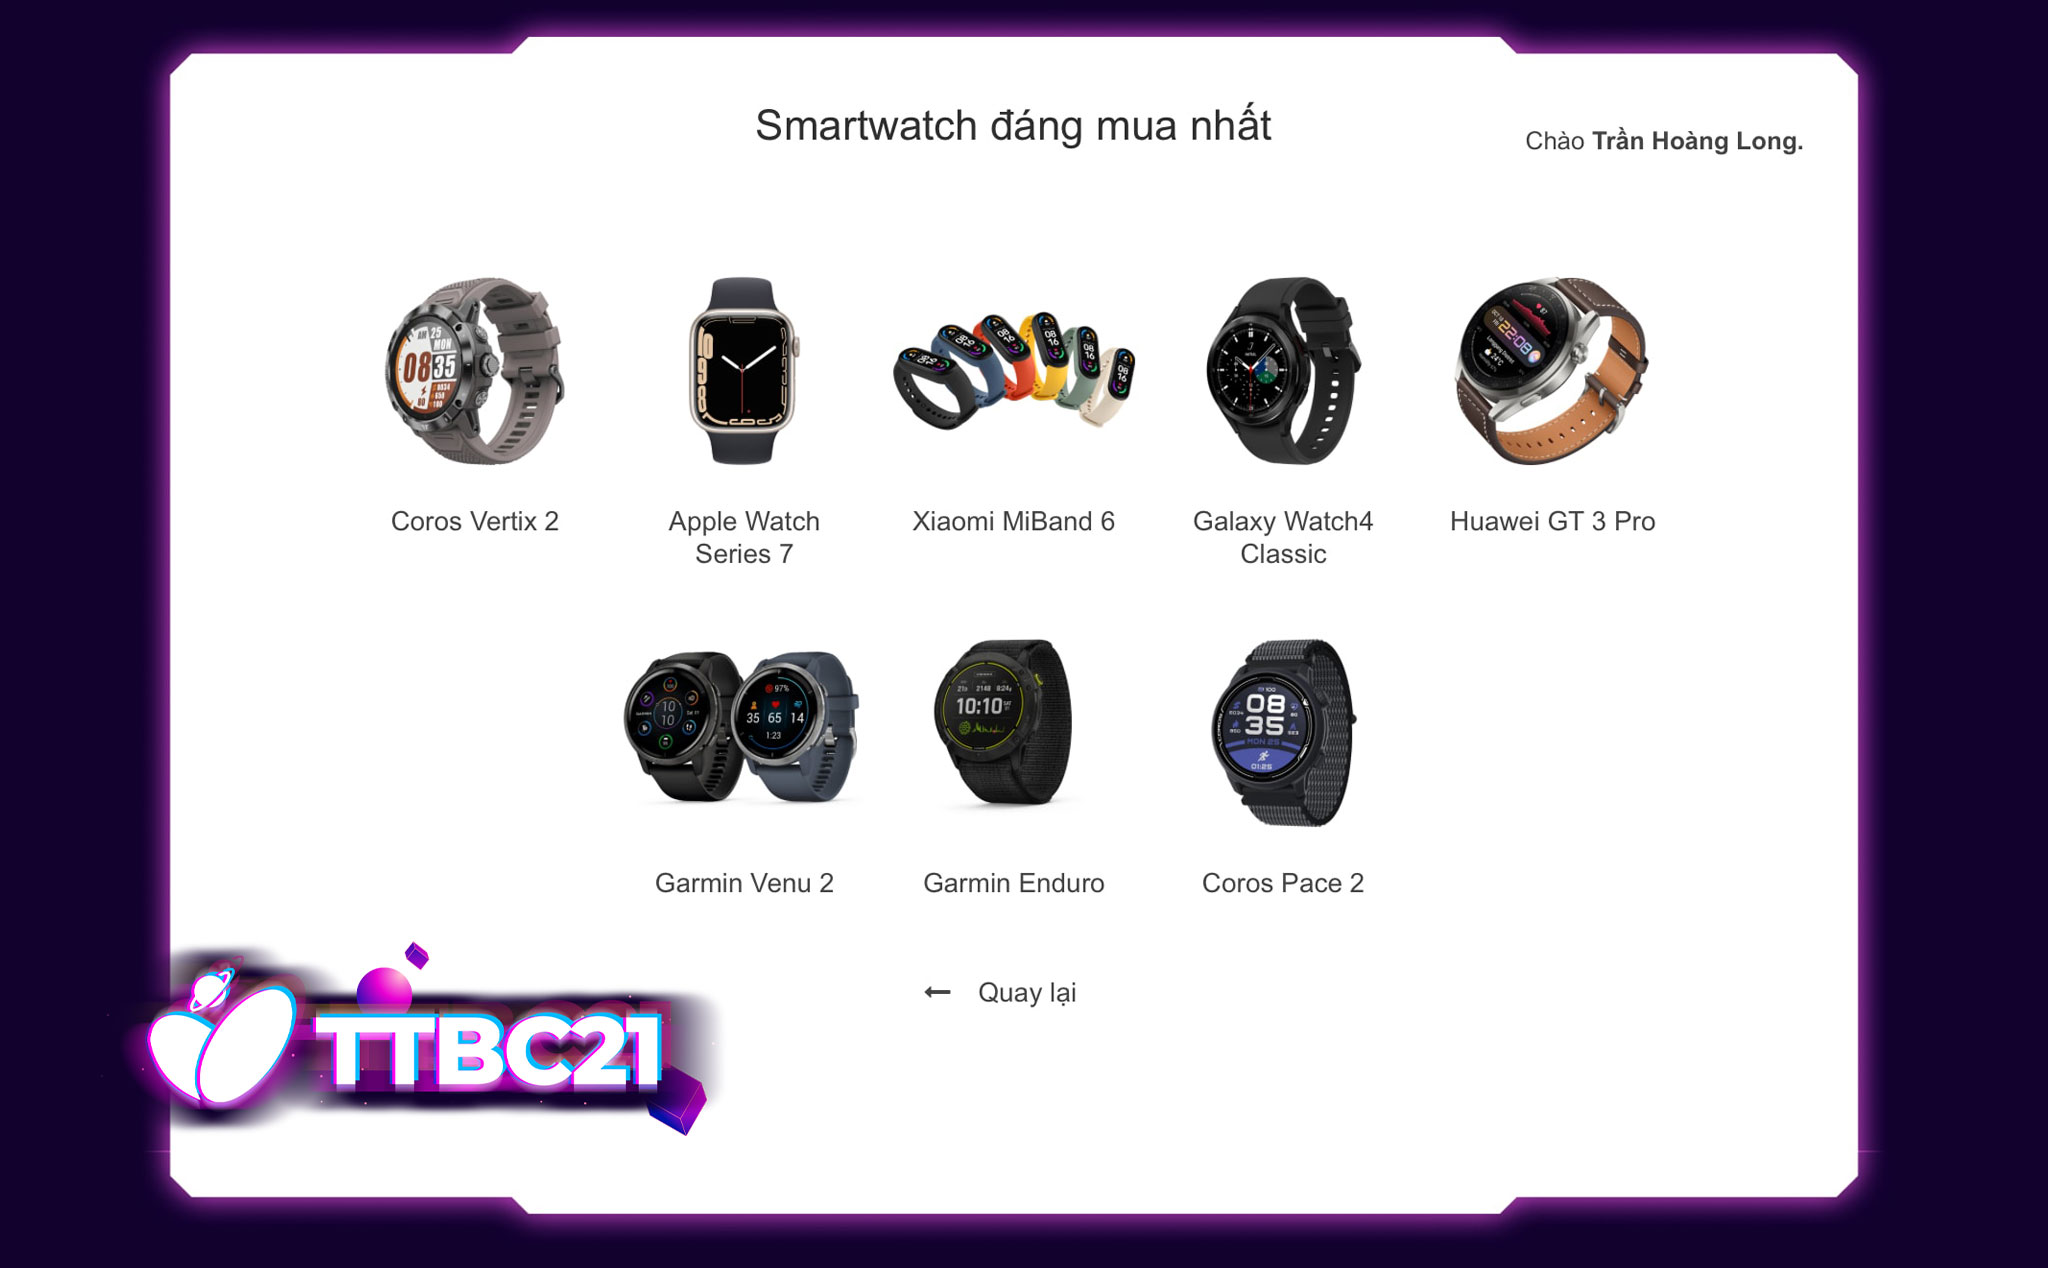 #TTBC21: Mời anh em tham gia bình chọn hạng mục Smartwatch, nhận gói quà 34 triệu